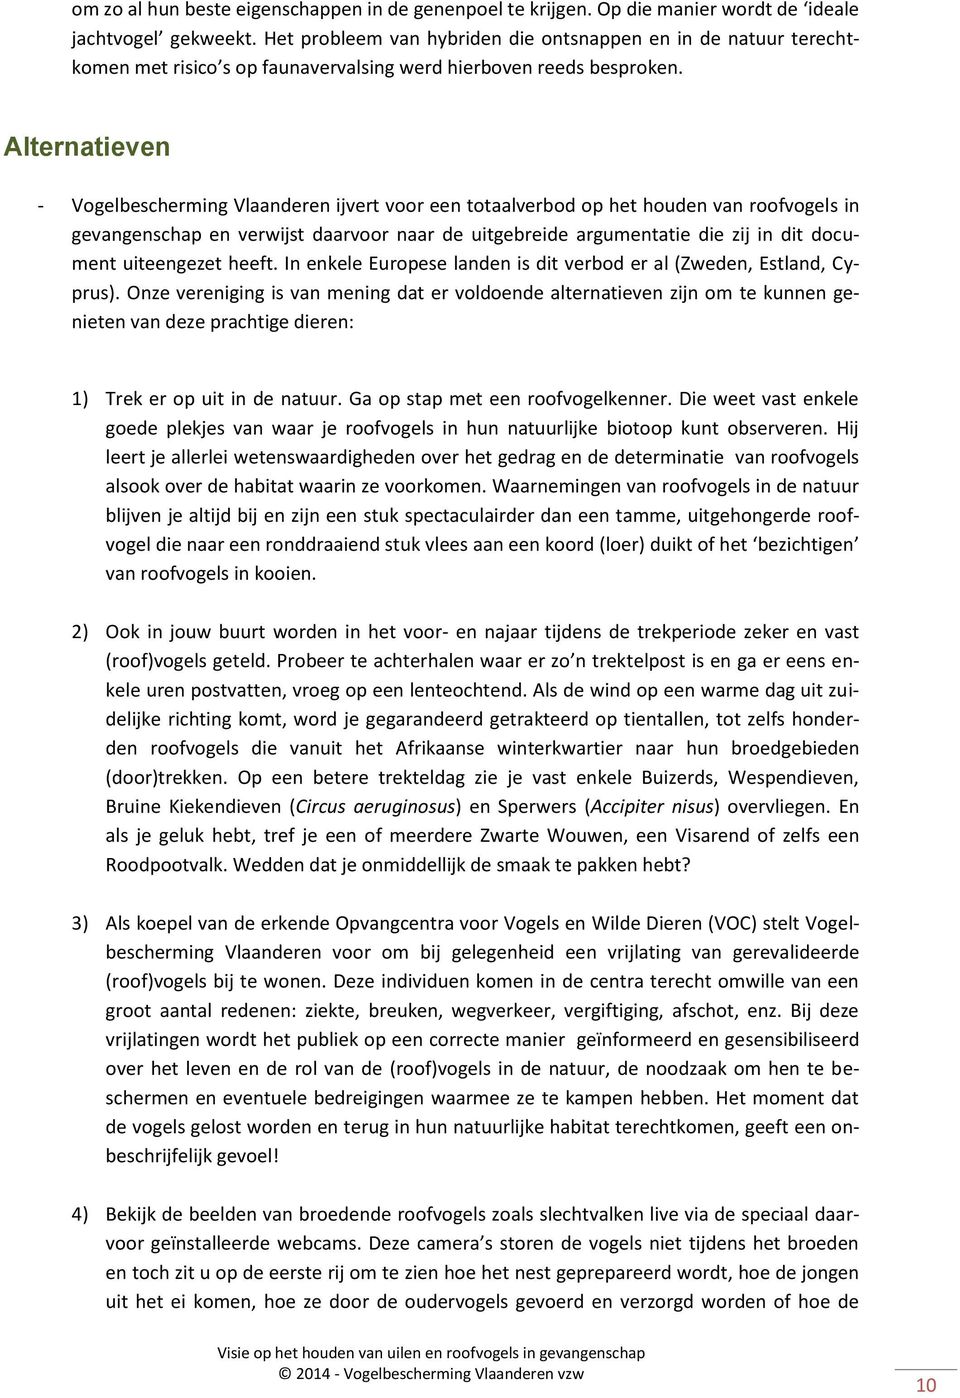 Alternatieven - Vogelbescherming Vlaanderen ijvert voor een totaalverbod op het houden van roofvogels in gevangenschap en verwijst daarvoor naar de uitgebreide argumentatie die zij in dit document